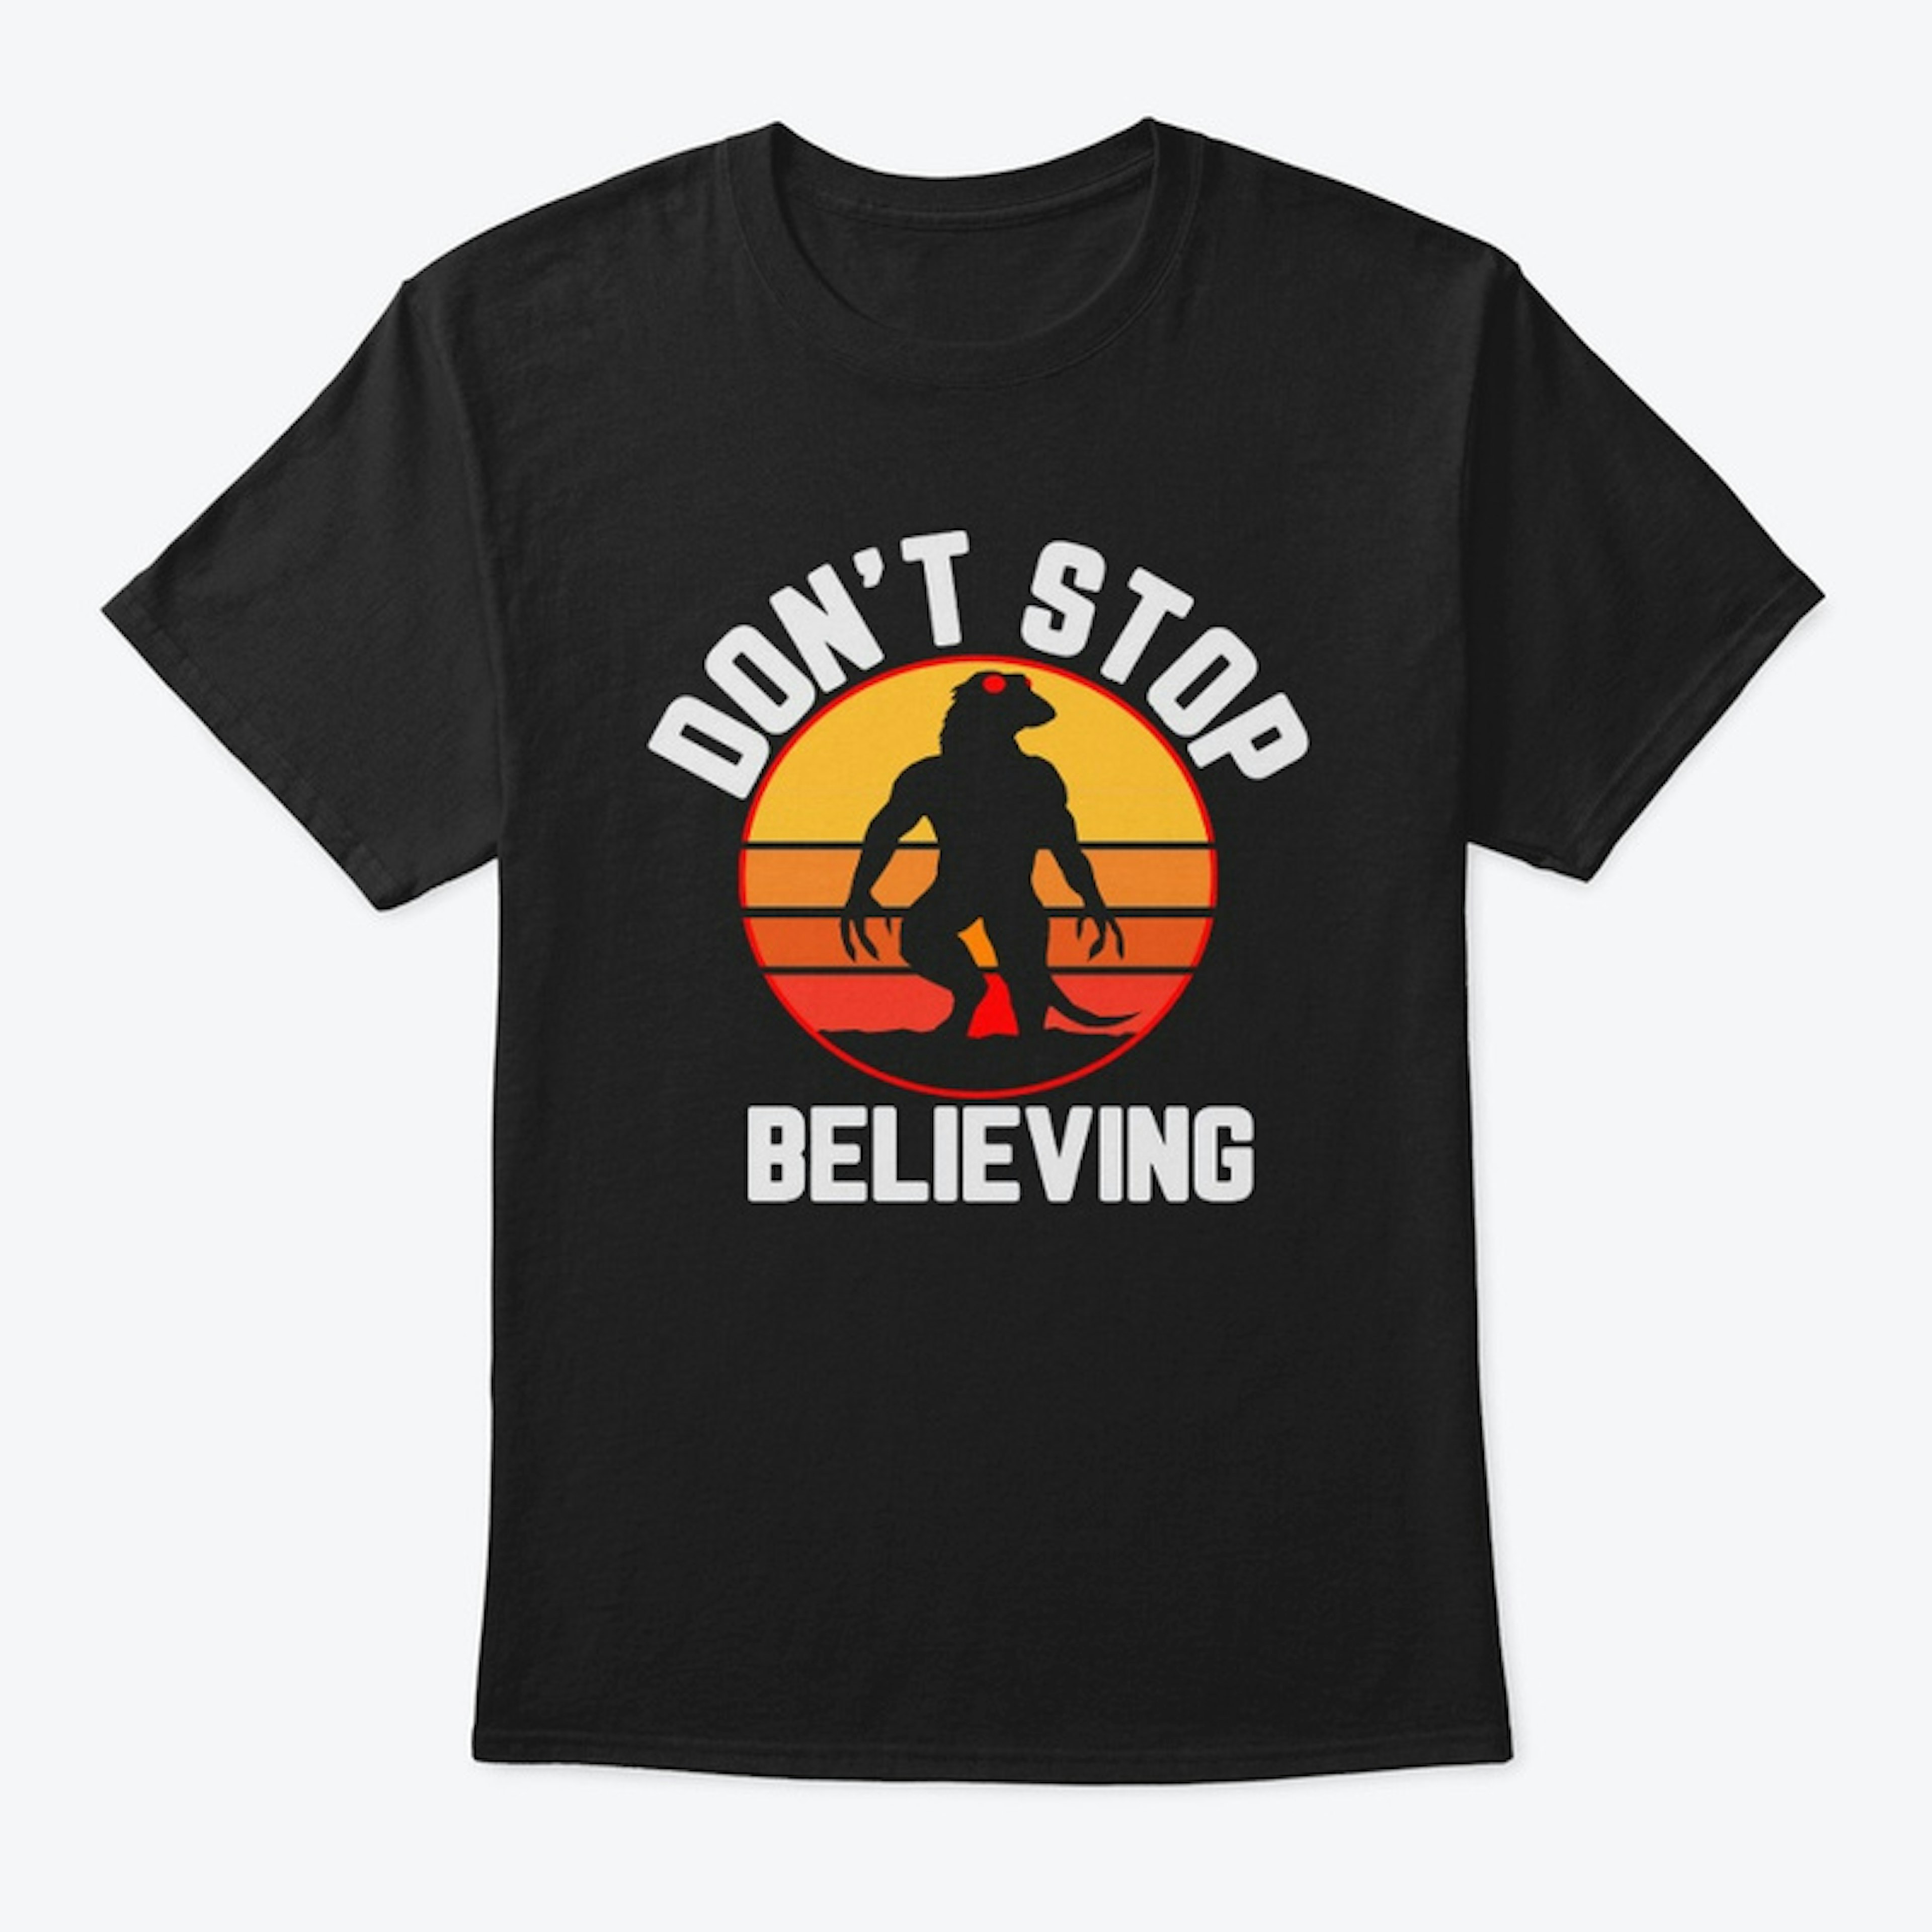 Don't Stop Believing Lizard Man T shirt